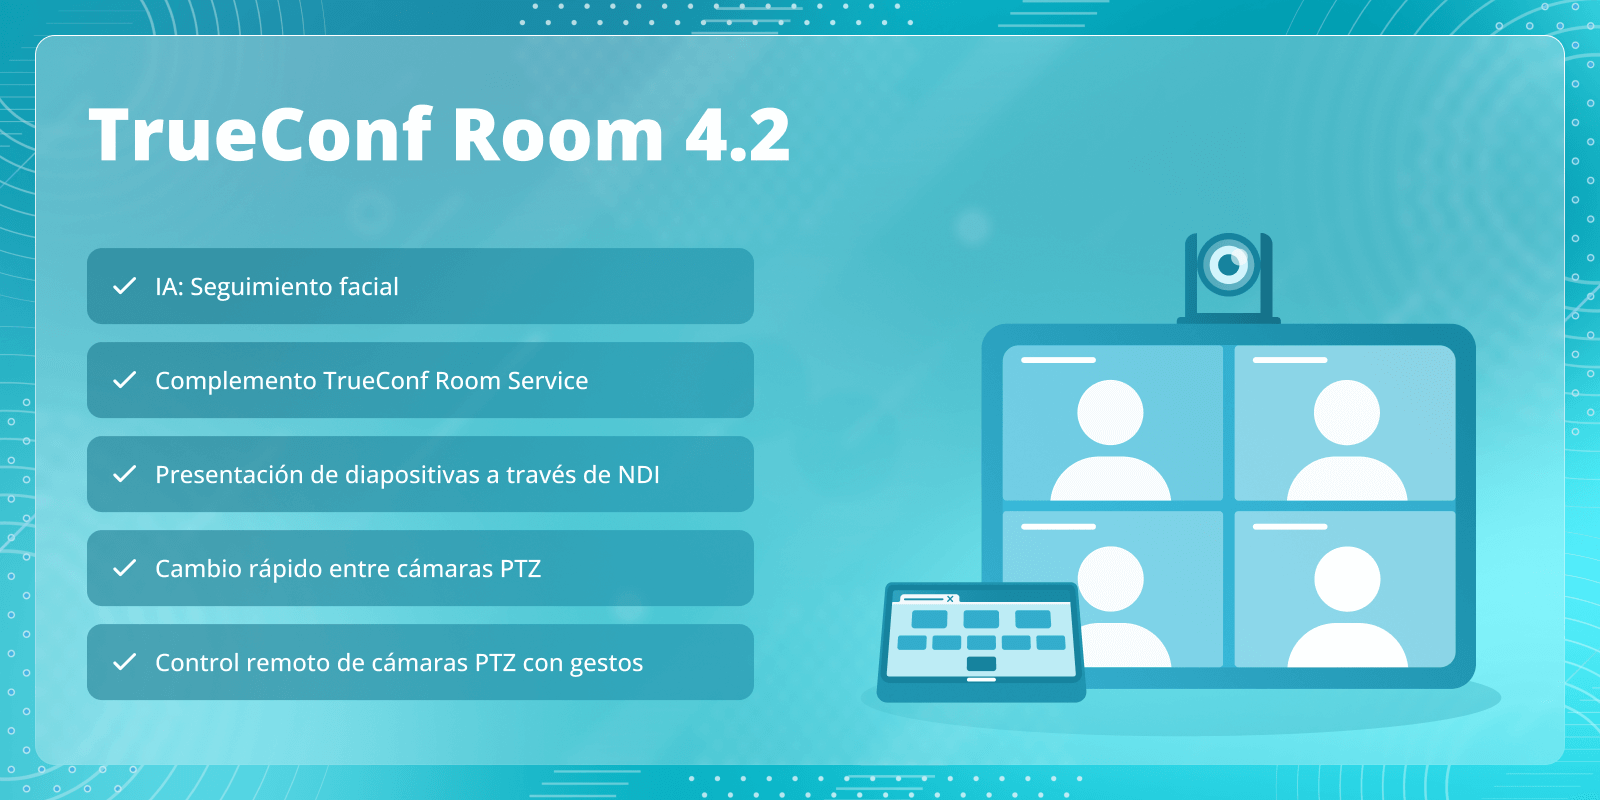 TrueConf Room 4.2: Complemento TrueConf Room Service y seguimiento facial 1